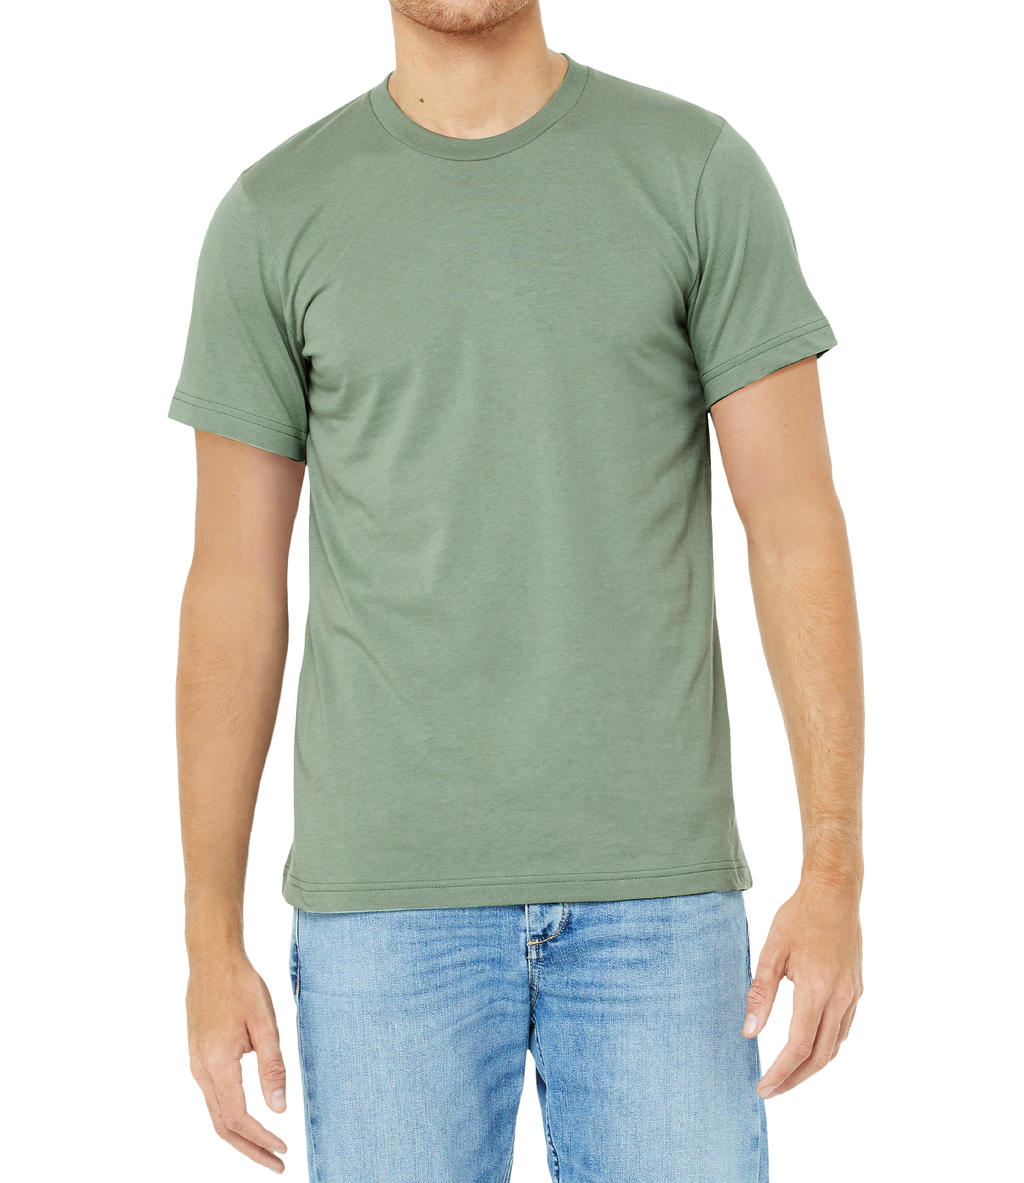 Tričko Bella Jersey - světle olivové, XL